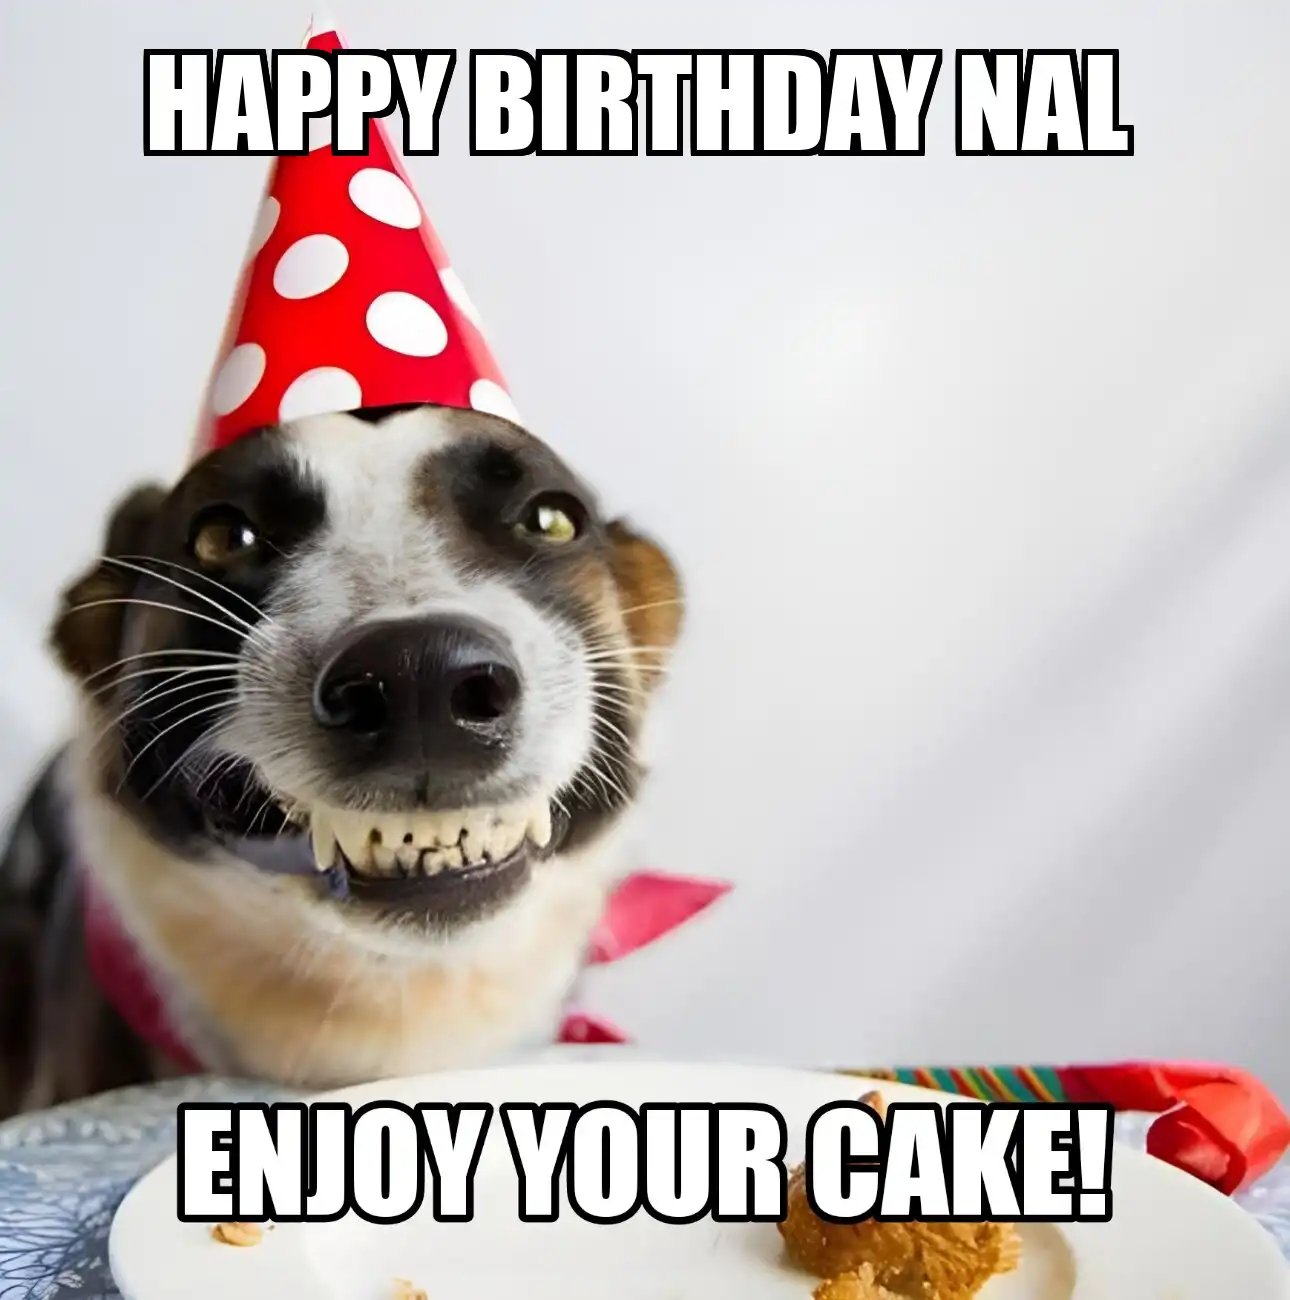 Happy Birthday Nal Enjoy Your Cake Dog Meme